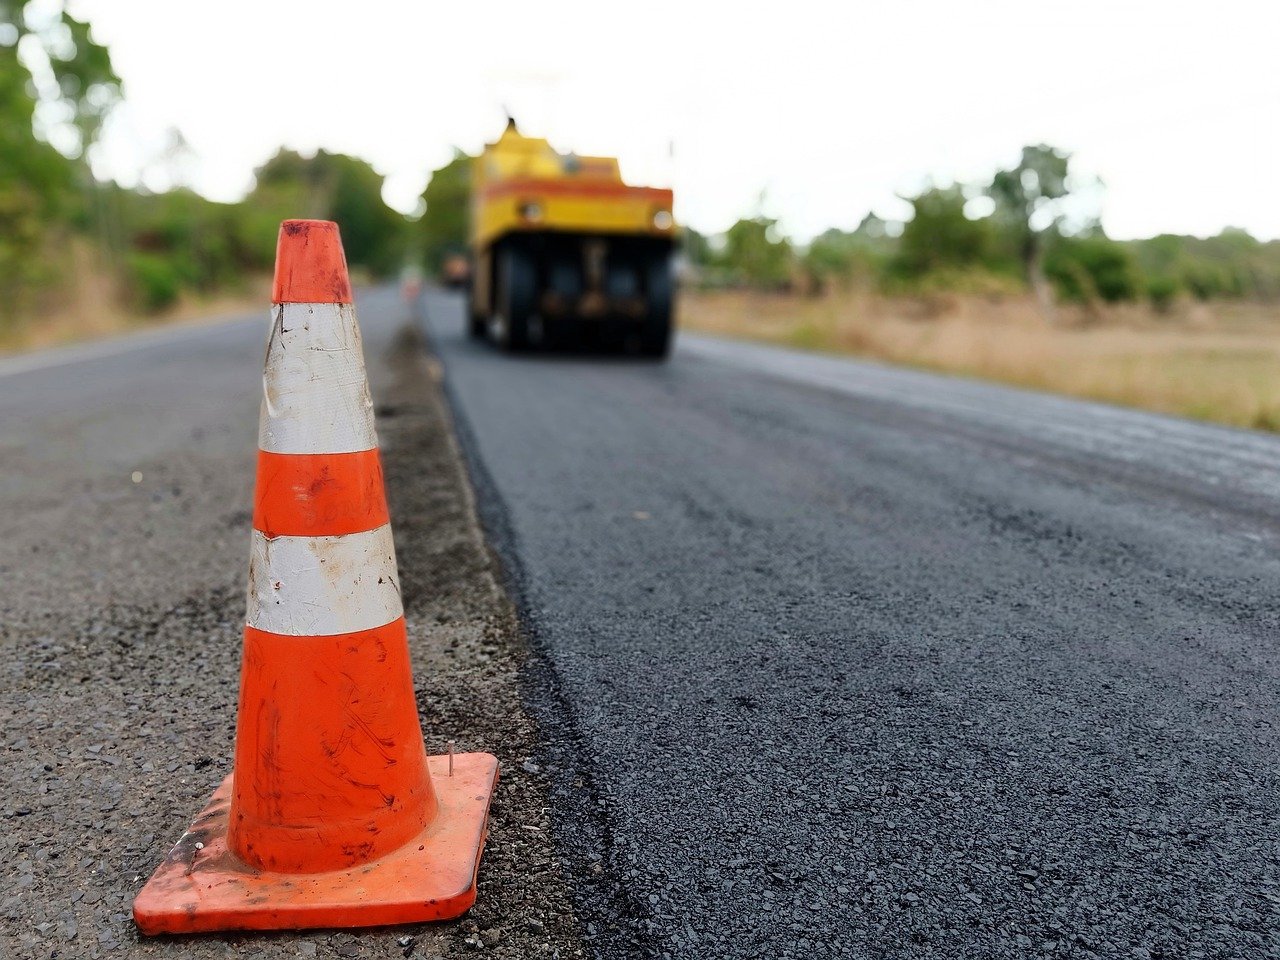 На севере Бурятии завершили капитальный ремонт 9 км аварийной дороги